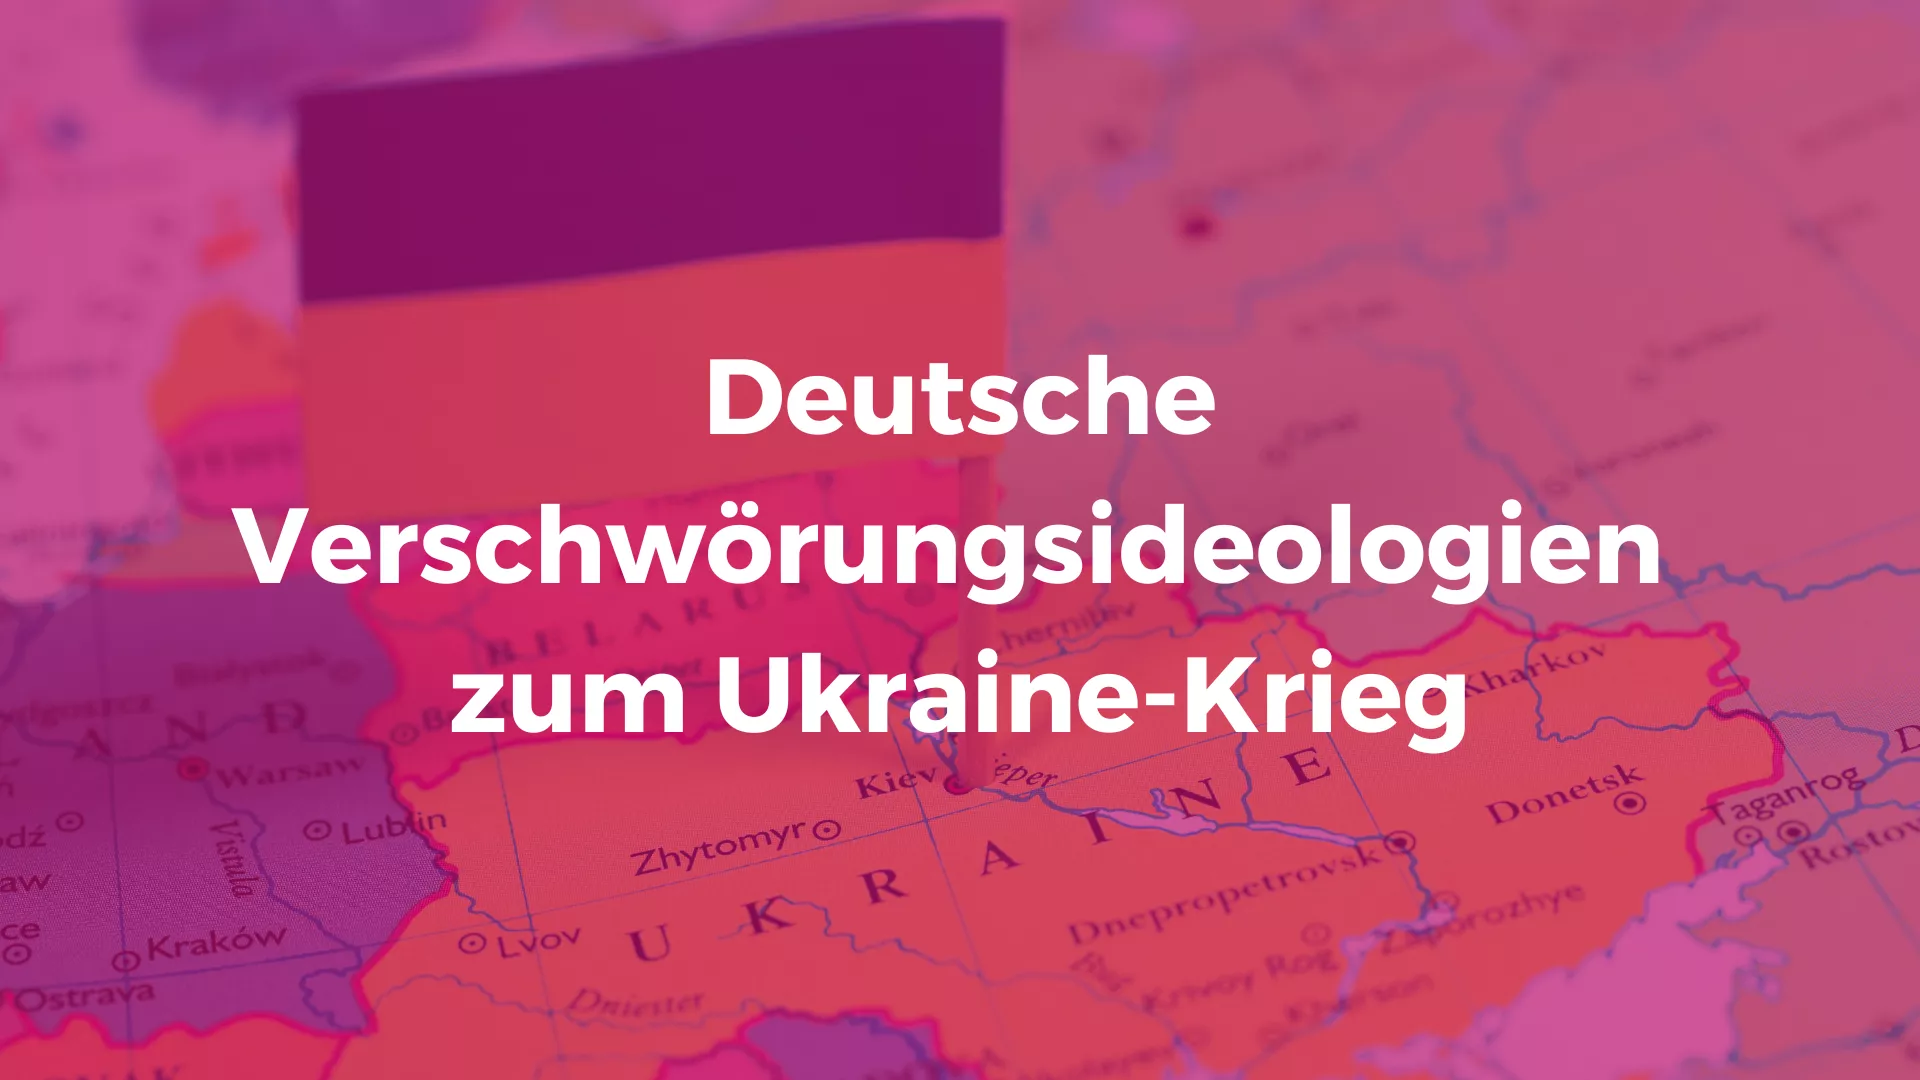 Bild mit Karte der Ukraine. Text: Deutsche Verschwörungsideologien zum Ukraine-Krieg